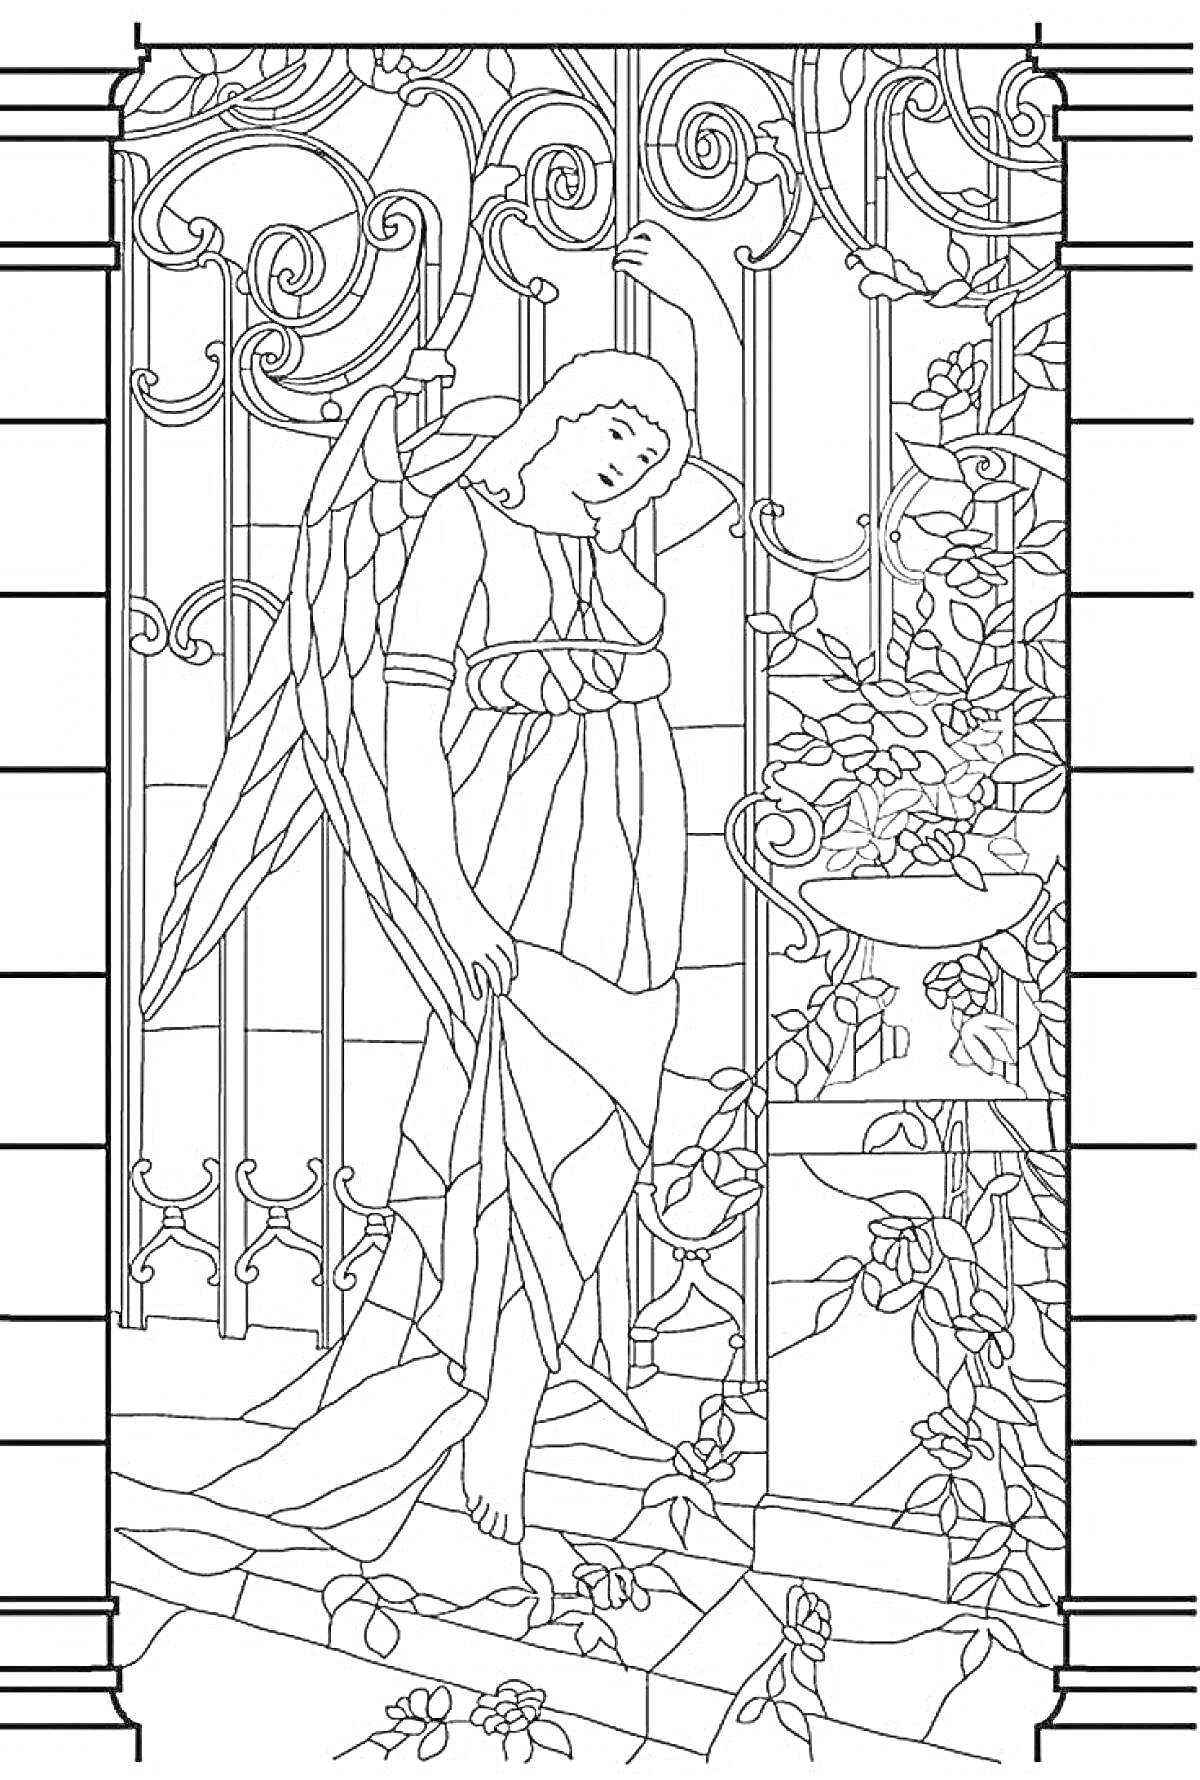 Раскраска Витраж с ангелом у кованой ограды и растительной композицией